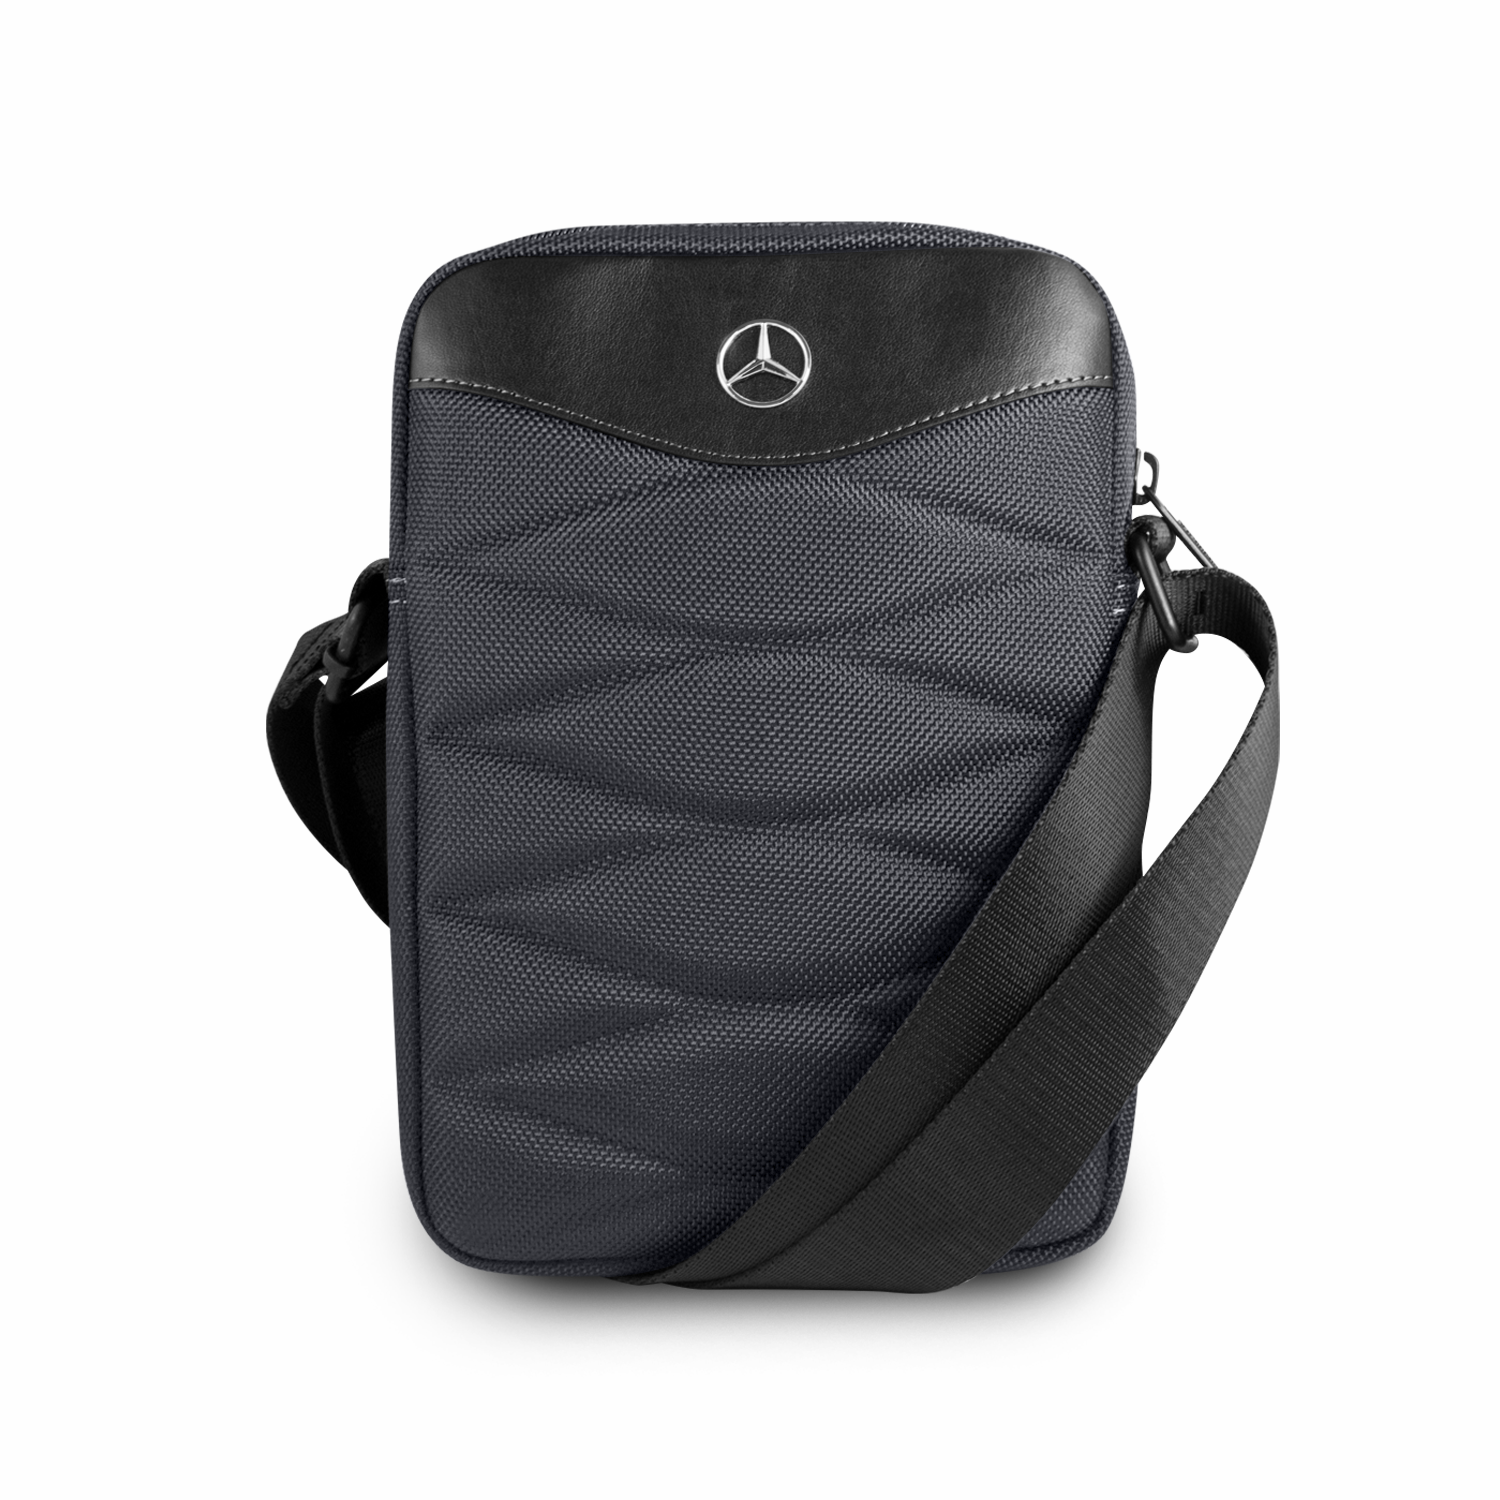 Mercedes Benz Pattern III 15” Messenger Laptop / Document Bag